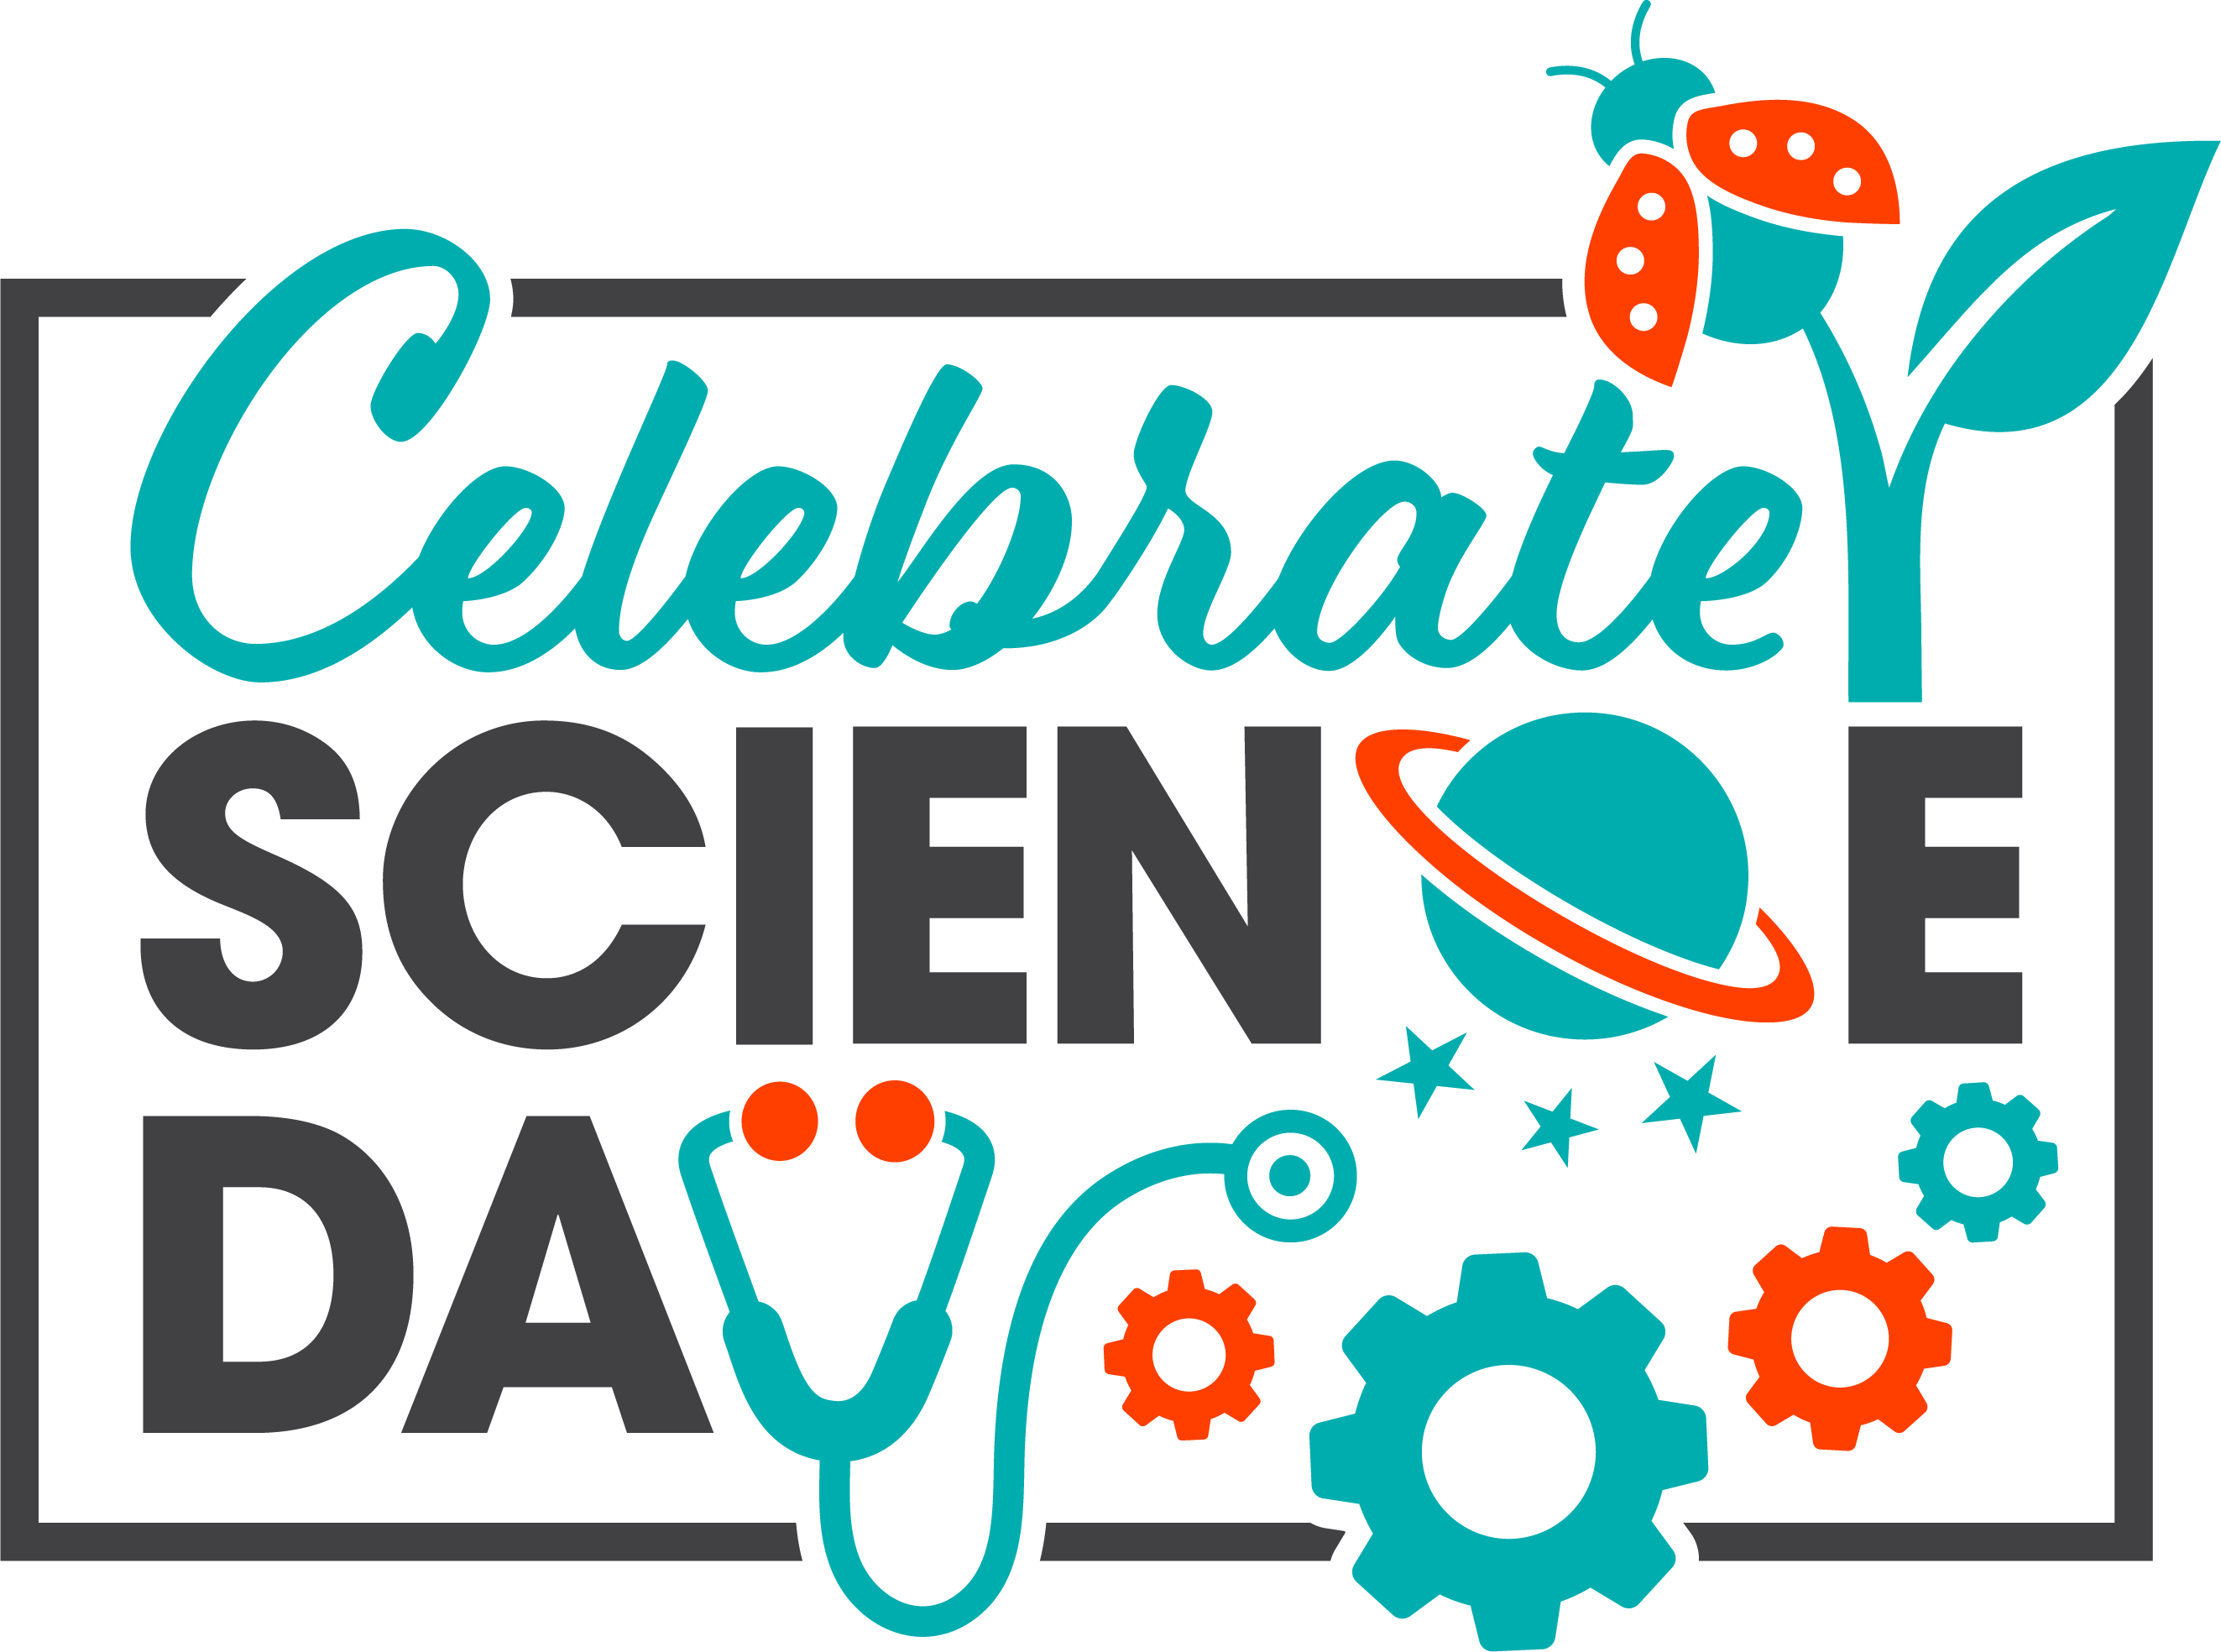 Celebrate Science Day